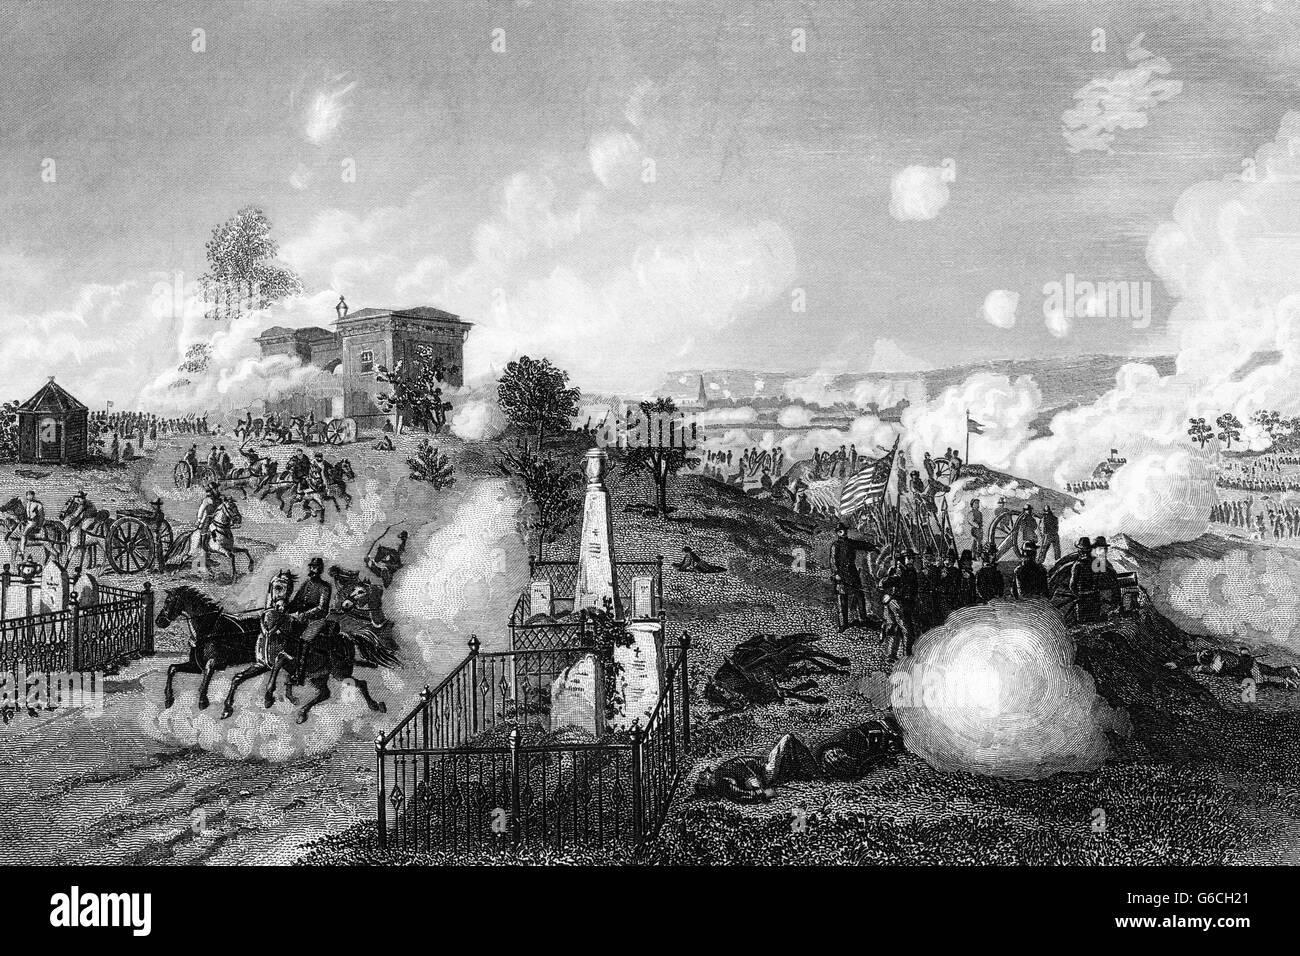 1860ER JAHRE JULI 1863 ANSICHT DER UNION LINIEN WÄHREND DER SCHLACHT VON GETTYSBURG Stockfoto